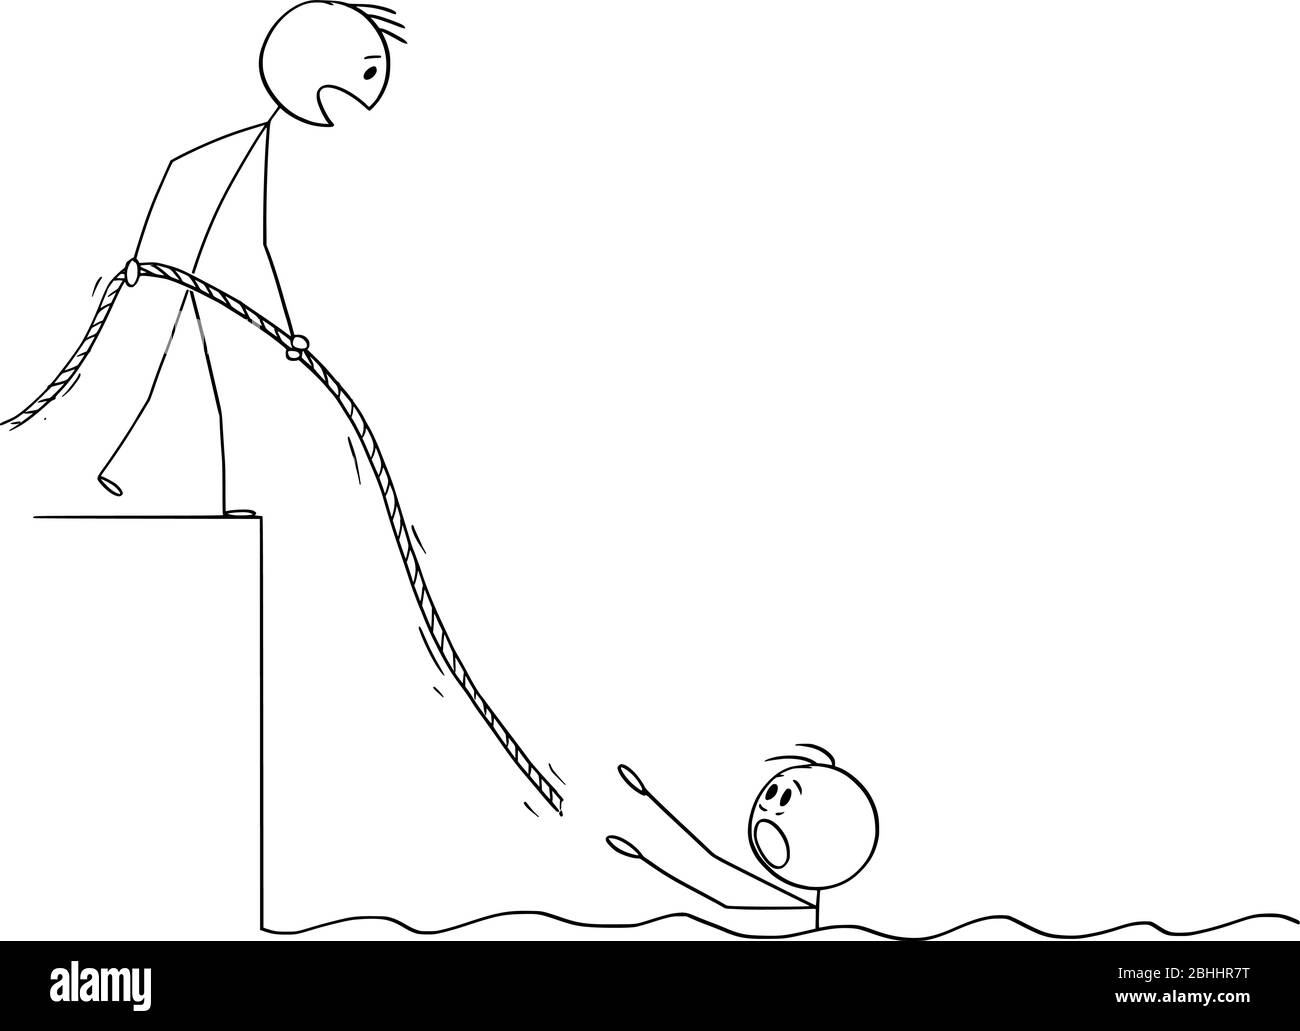 Figura di bastone cartoon vettoriale che disegnano illustrazione concettuale dell'uomo annegato nell'acqua, un altro uomo lo sta aiutando dandogli la corda. Concetto di lavoro di squadra, assicurazione o previdenza sociale. Illustrazione Vettoriale